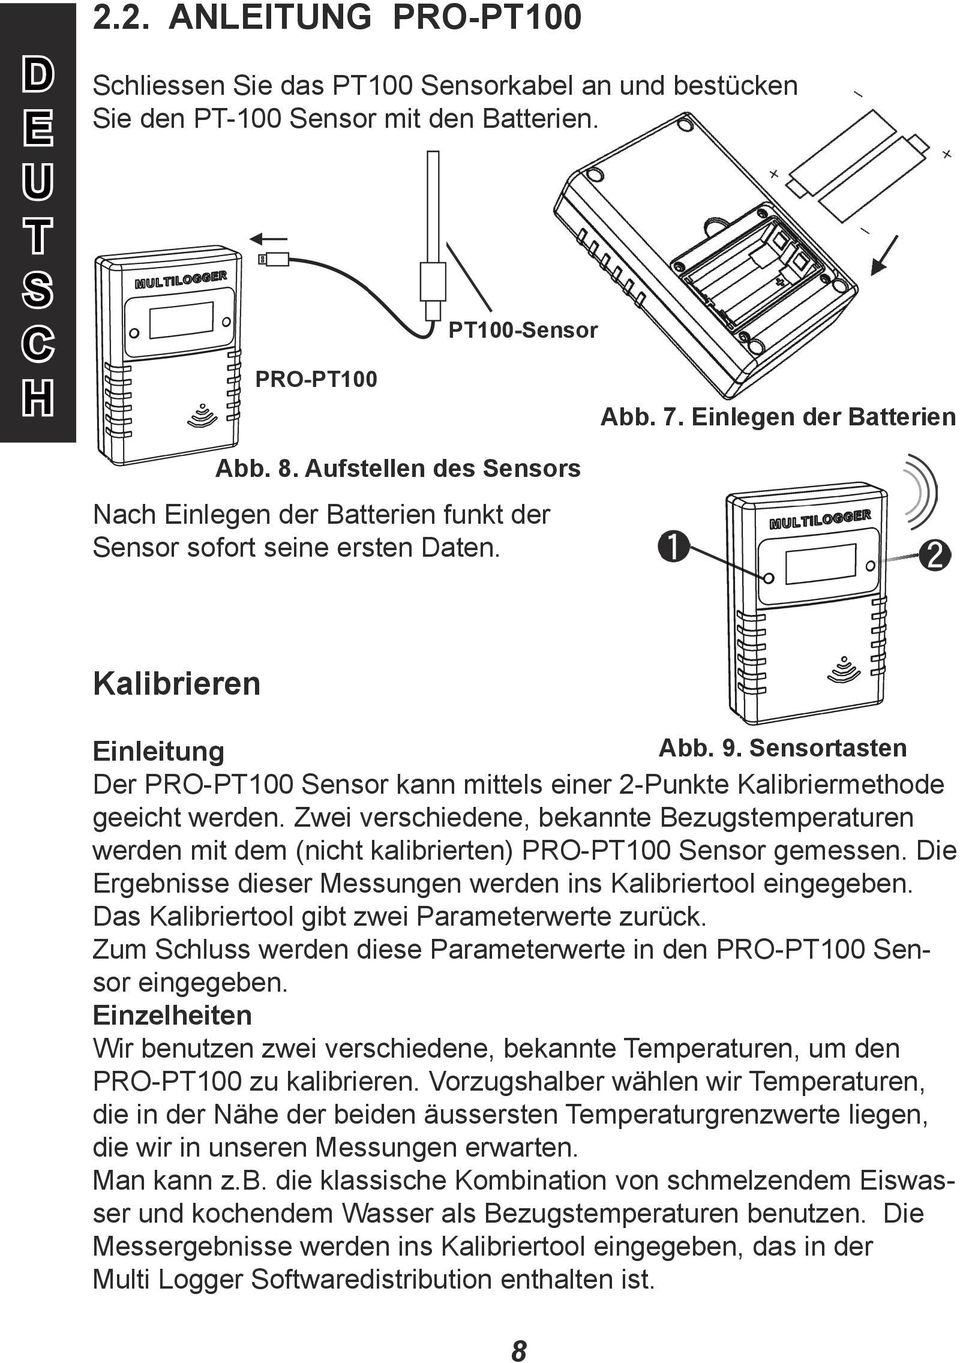 ensortasten Der PRO-PT100 ensor kann mittels einer 2-Punkte Kalibriermethode geeicht werden.